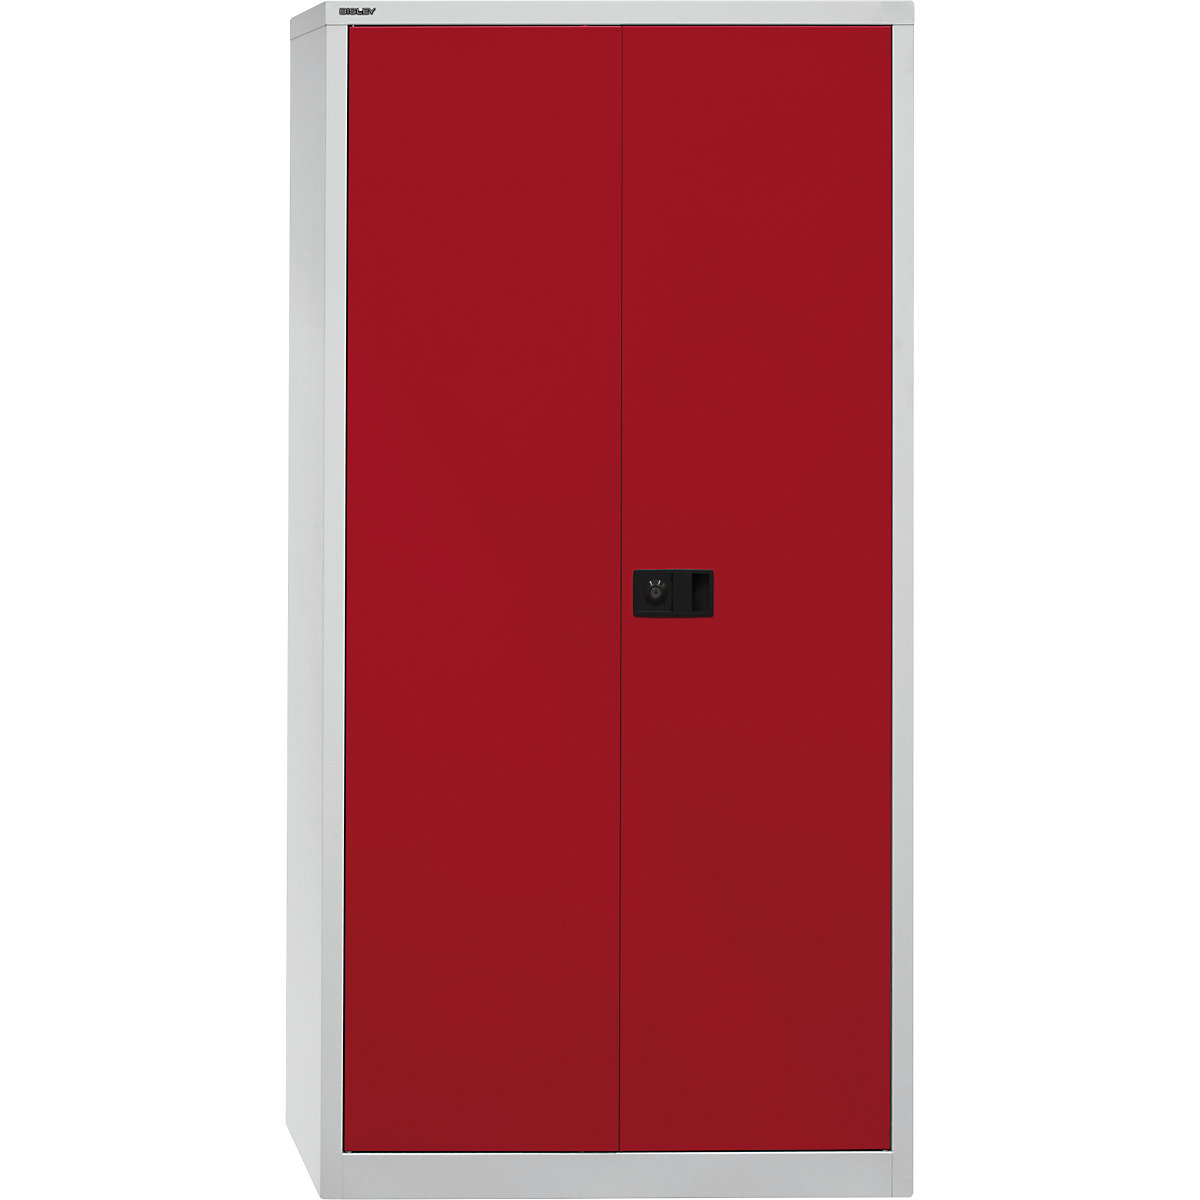 Armario de puertas batientes UNIVERSAL – BISLEY, H x A x P 1950 x 914 x 400 mm, 4 baldas galvanizadas, 5 pisos de archivadores, gris luminoso / rojo cardenal-6